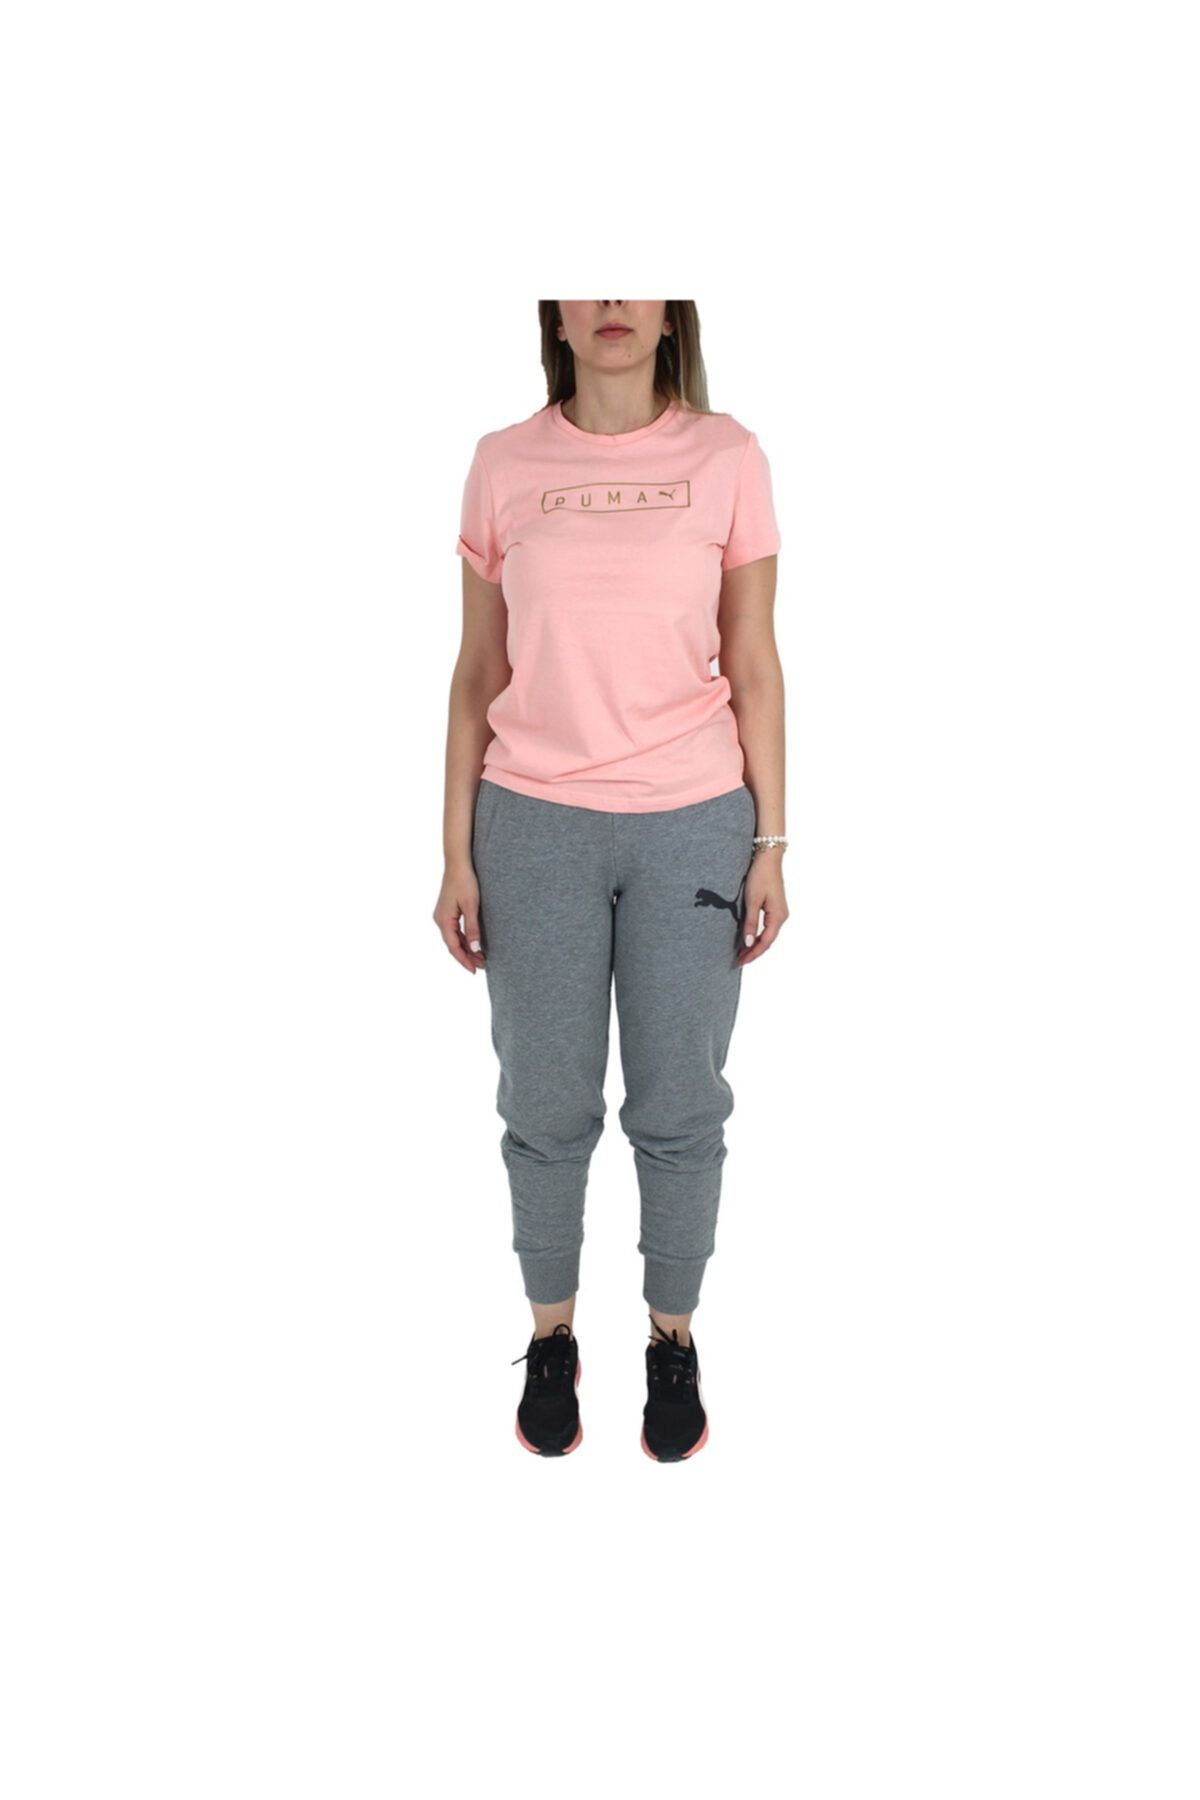 Puma 67155701 Bppo-003053 Blank Base Women"s Tee Kadın T-shirts